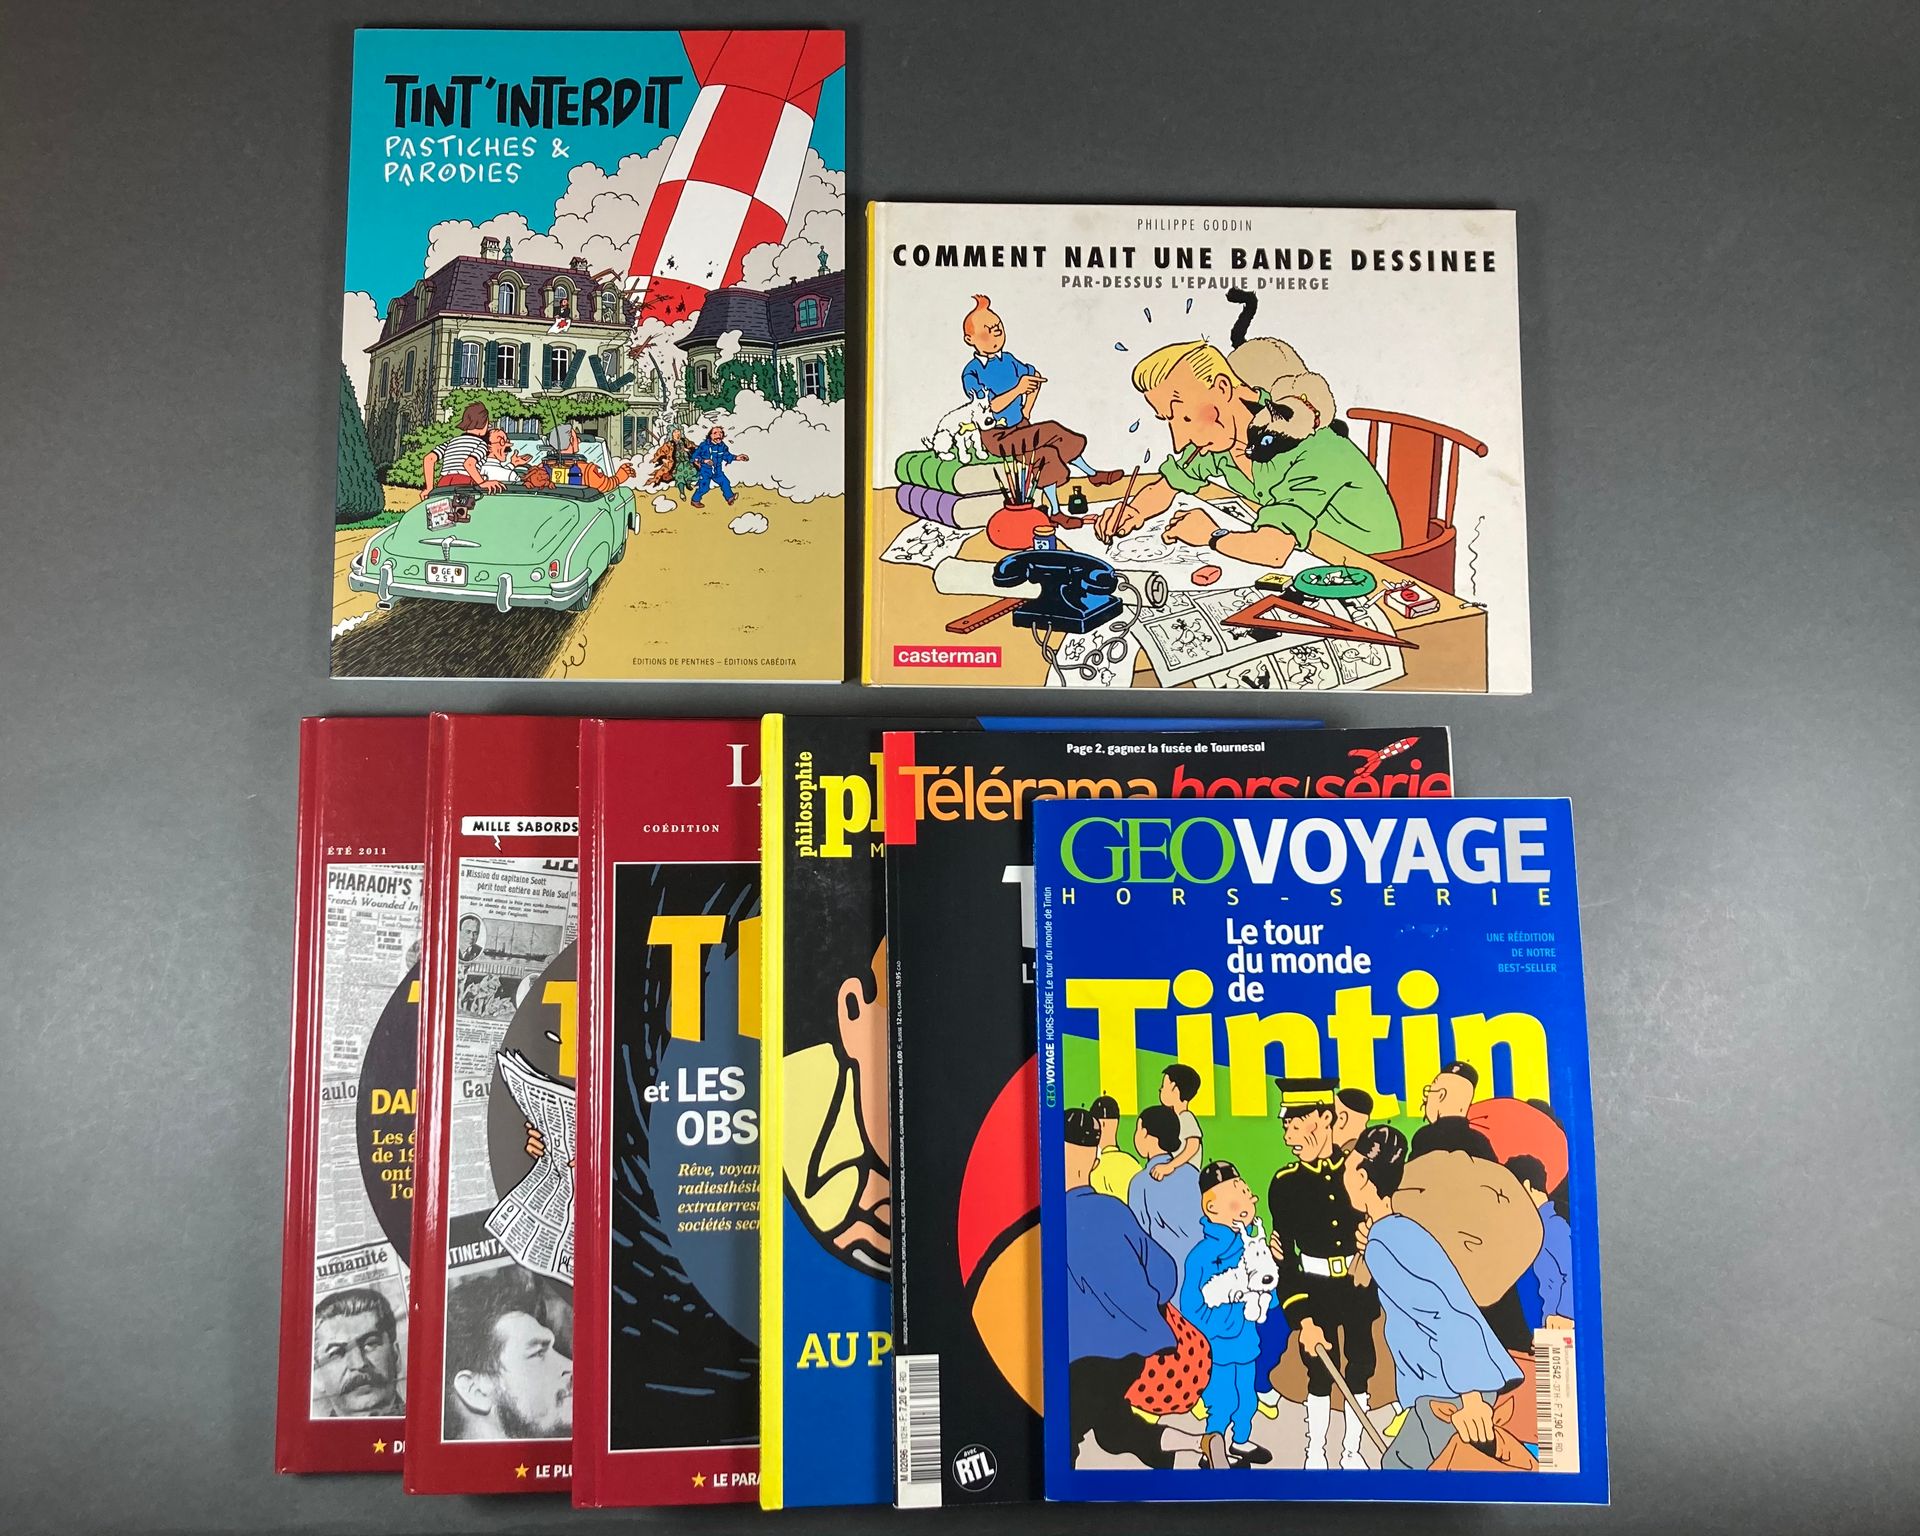 Hergé - Tintin D'AJ Tornare, Tint'interdit, Pastiches et parodies, rare édition &hellip;